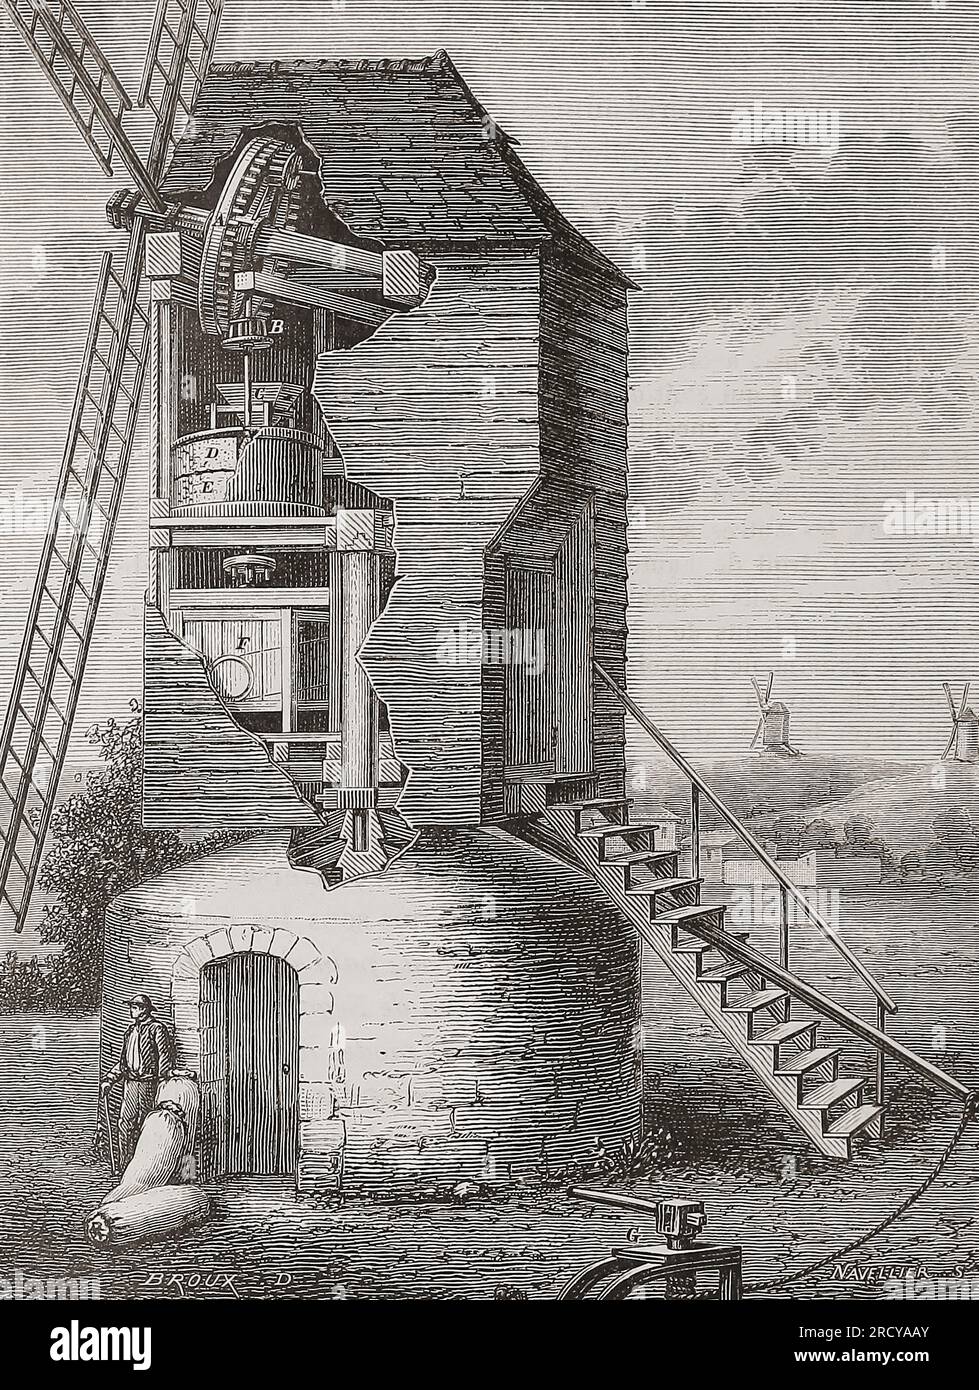 vista in sezione del xix secolo di un mulino a vento che mostra i macchinari utilizzati per macinare il grano. Dopo un'illustrazione in Les merveilles de l'industrie, di Louis Figuier, pubblicata nel 1877. Foto Stock